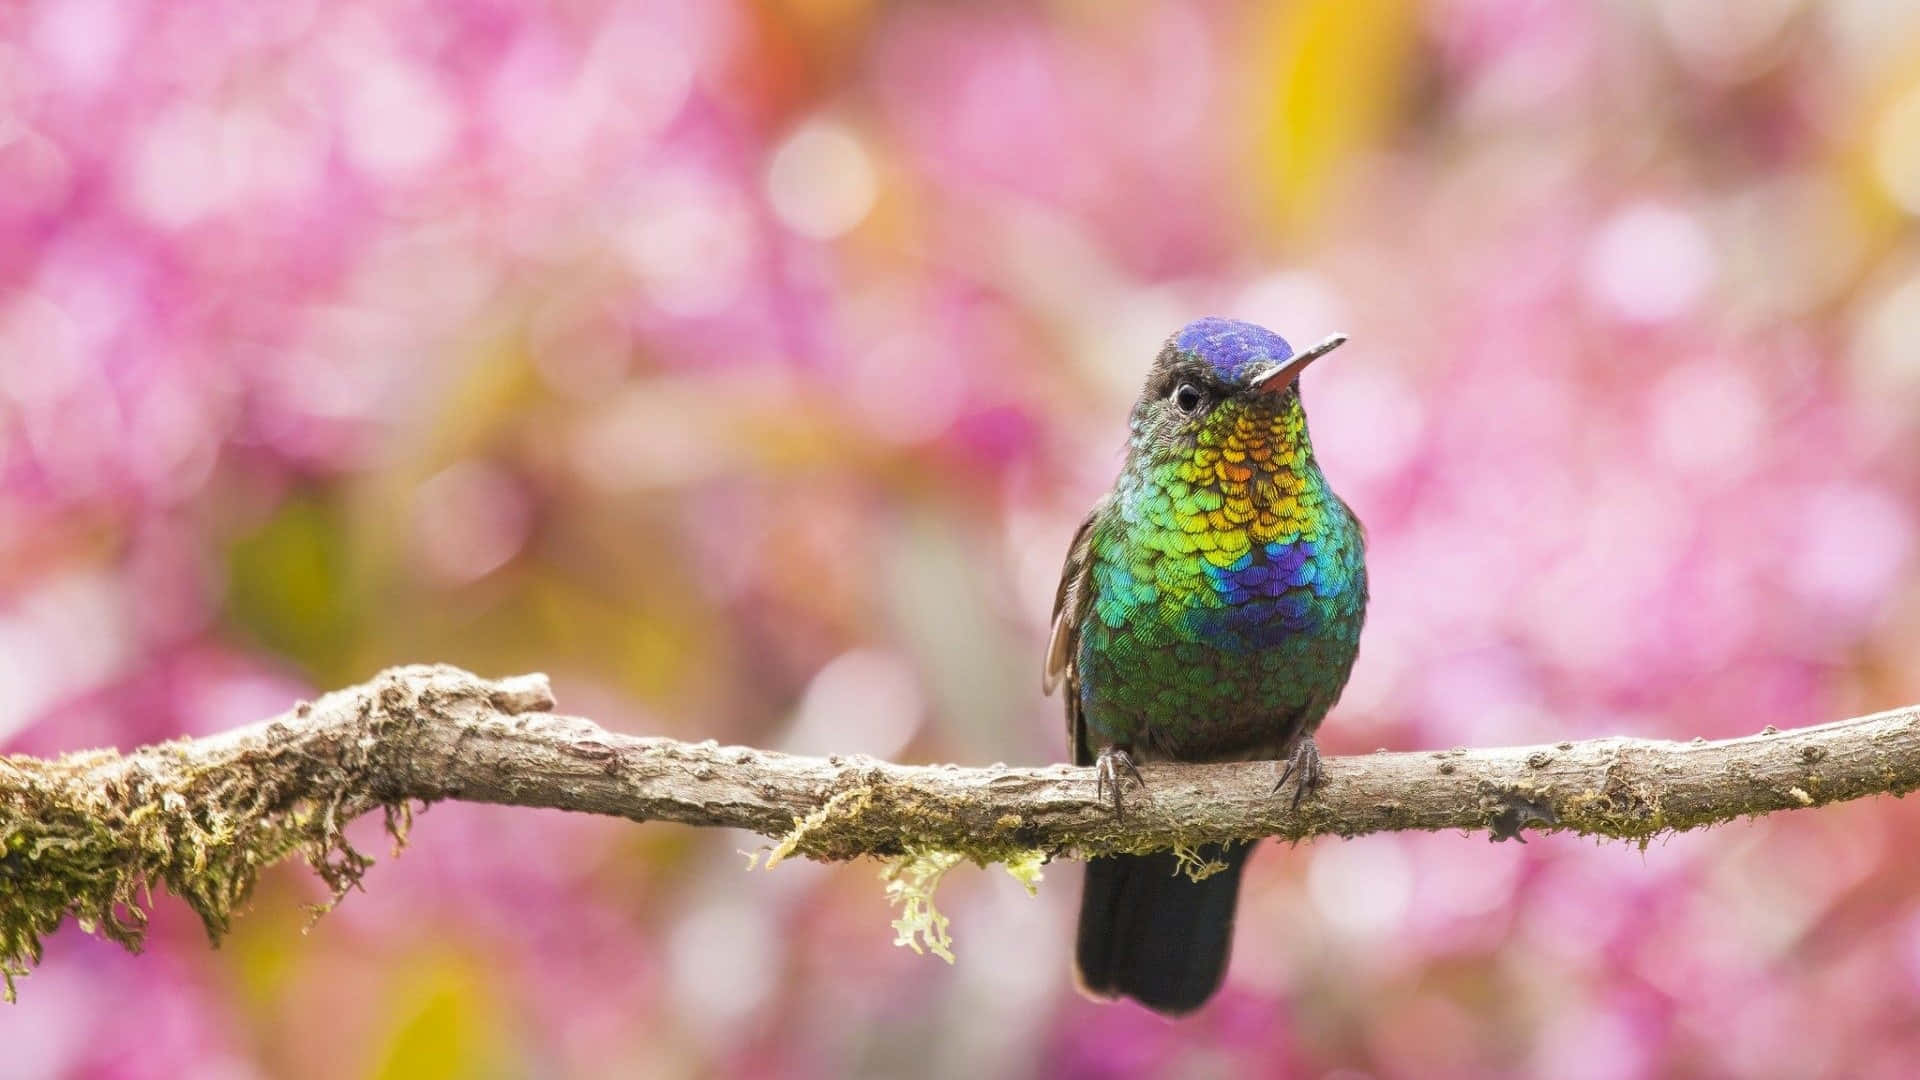 “Beautiful Hummingbird in flight”